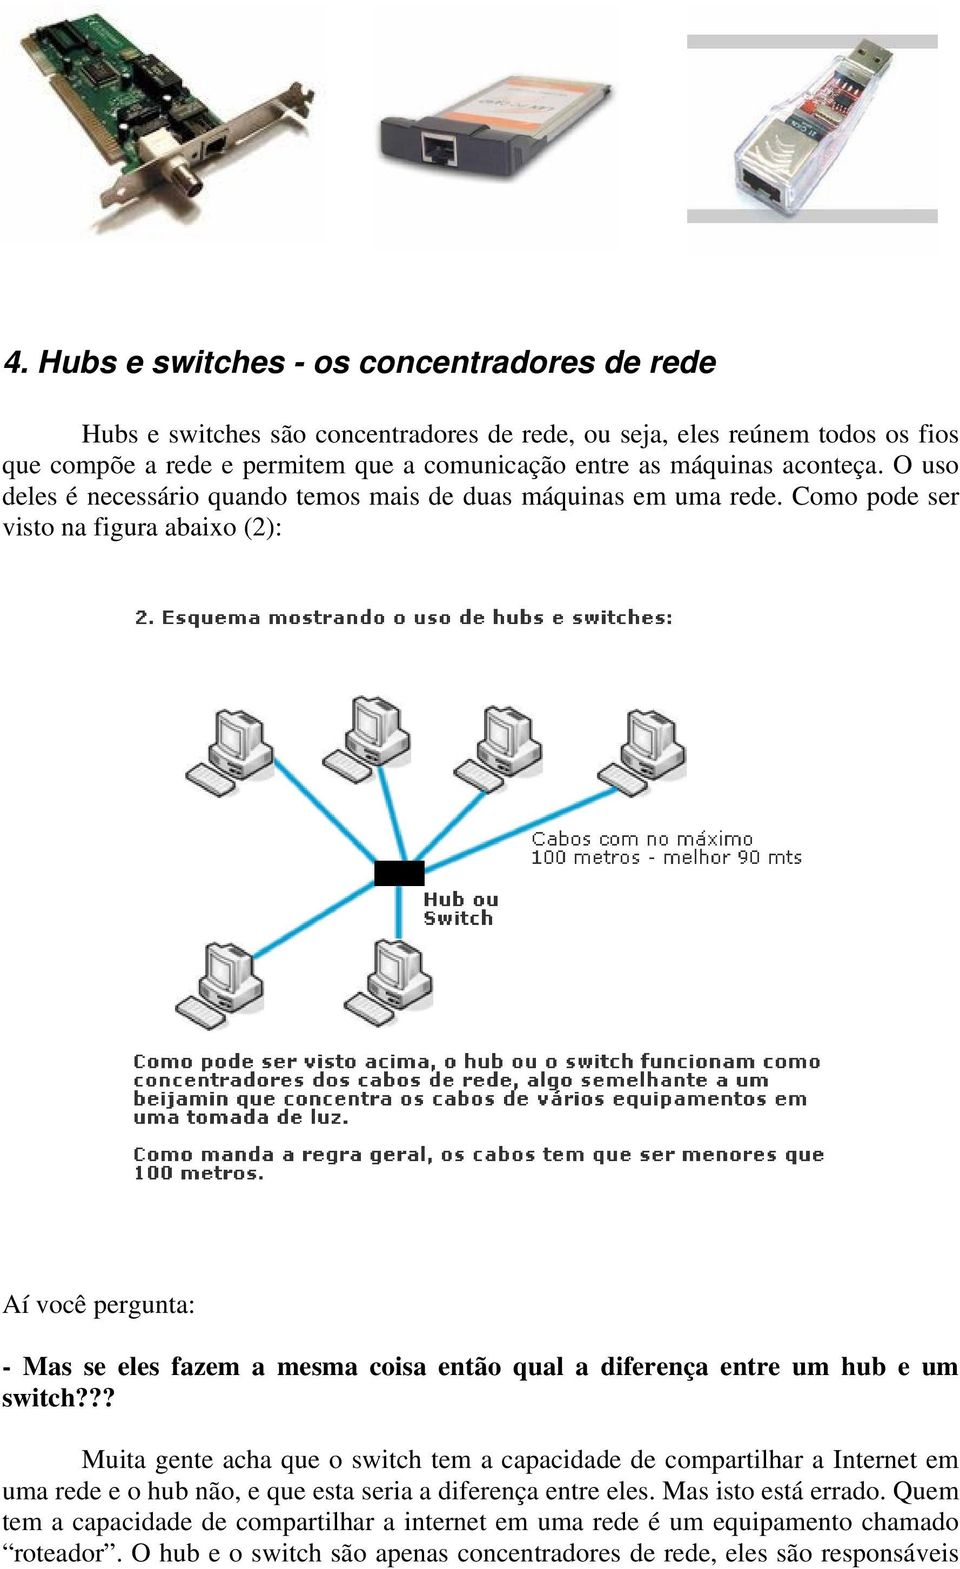 Como pode ser visto na figura abaixo (2): Aí você pergunta: - Mas se eles fazem a mesma coisa então qual a diferença entre um hub e um switch?